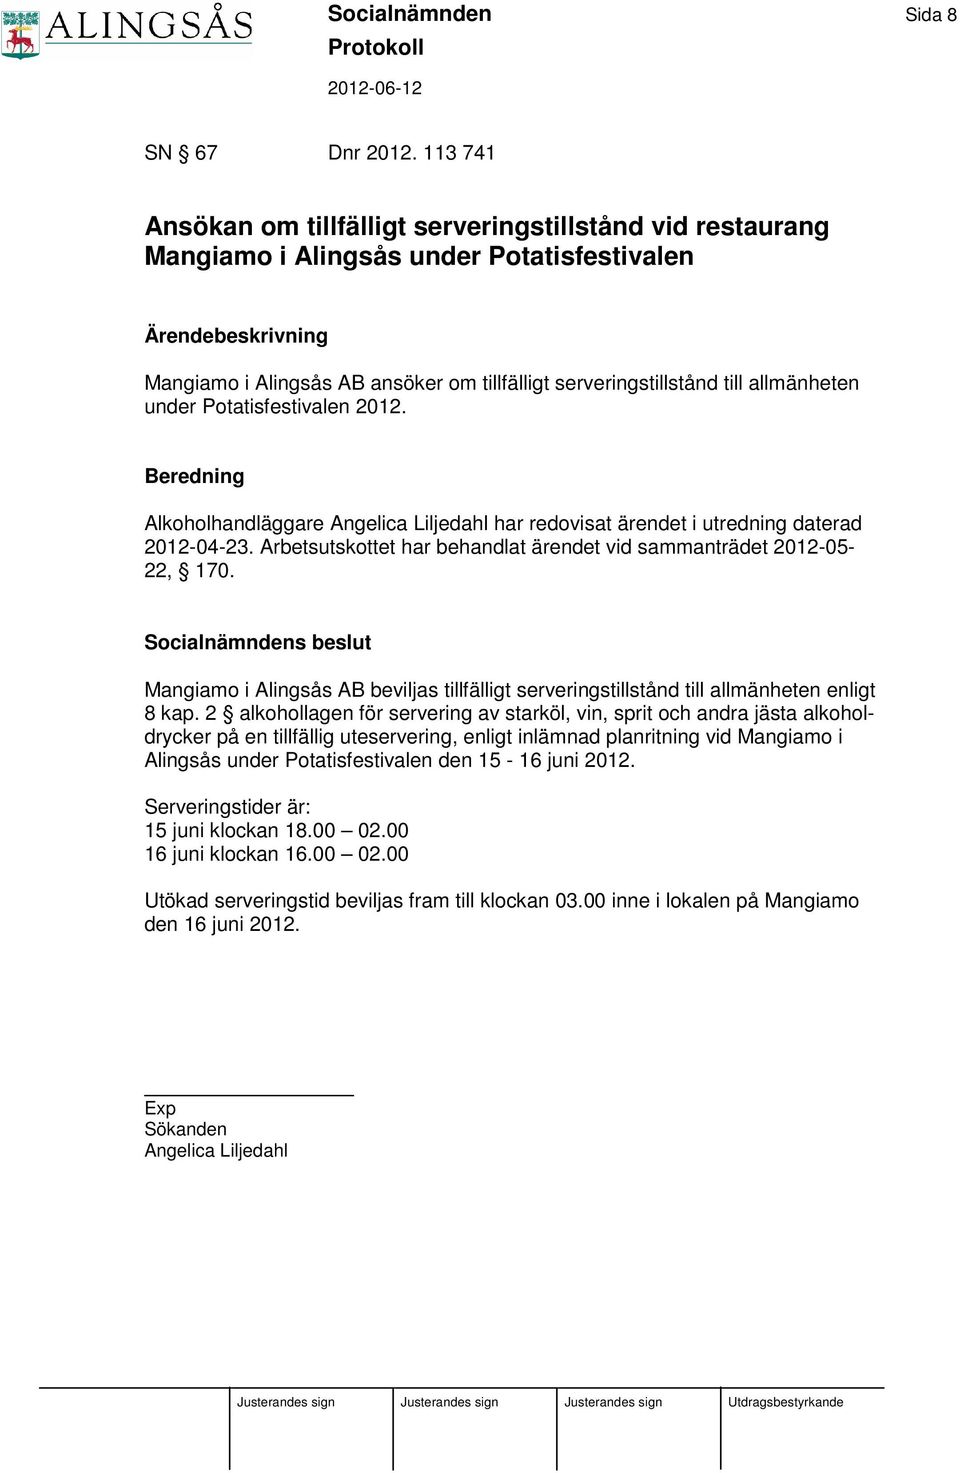 Potatisfestivalen 2012. Alkoholhandläggare Angelica Liljedahl har redovisat ärendet i utredning daterad 2012-04-23. Arbetsutskottet har behandlat ärendet vid sammanträdet 2012-05- 22, 170.